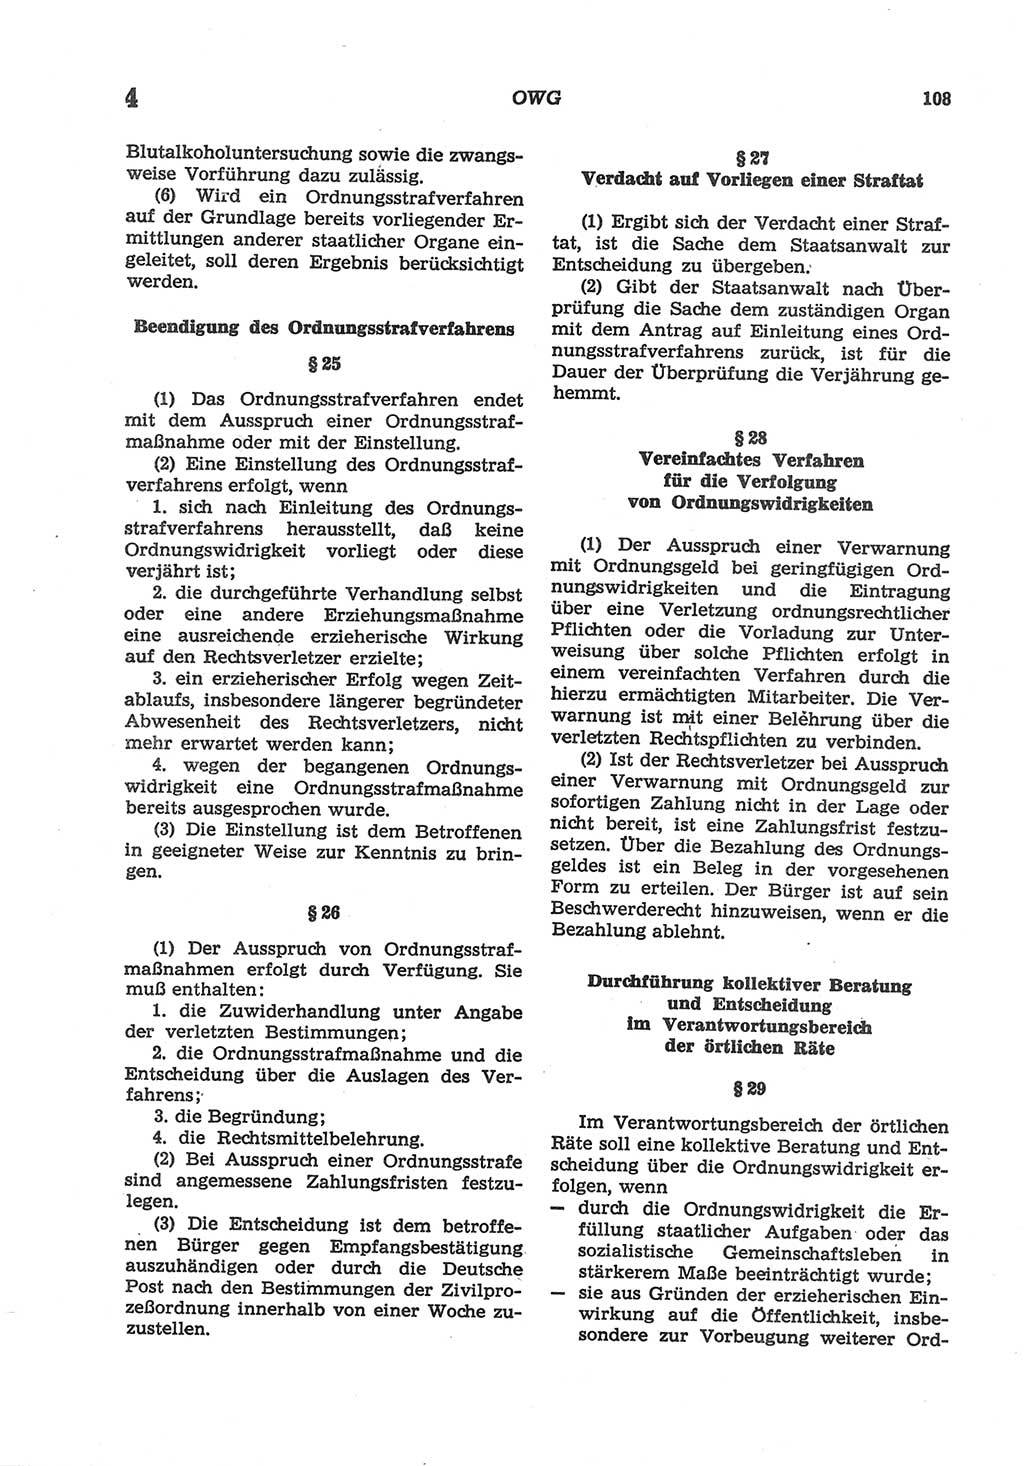 Strafgesetzbuch (StGB) der Deutschen Demokratischen Republik (DDR) und angrenzende Gesetze und Bestimmungen 1977, Seite 108 (StGB DDR Ges. Best. 1977, S. 108)